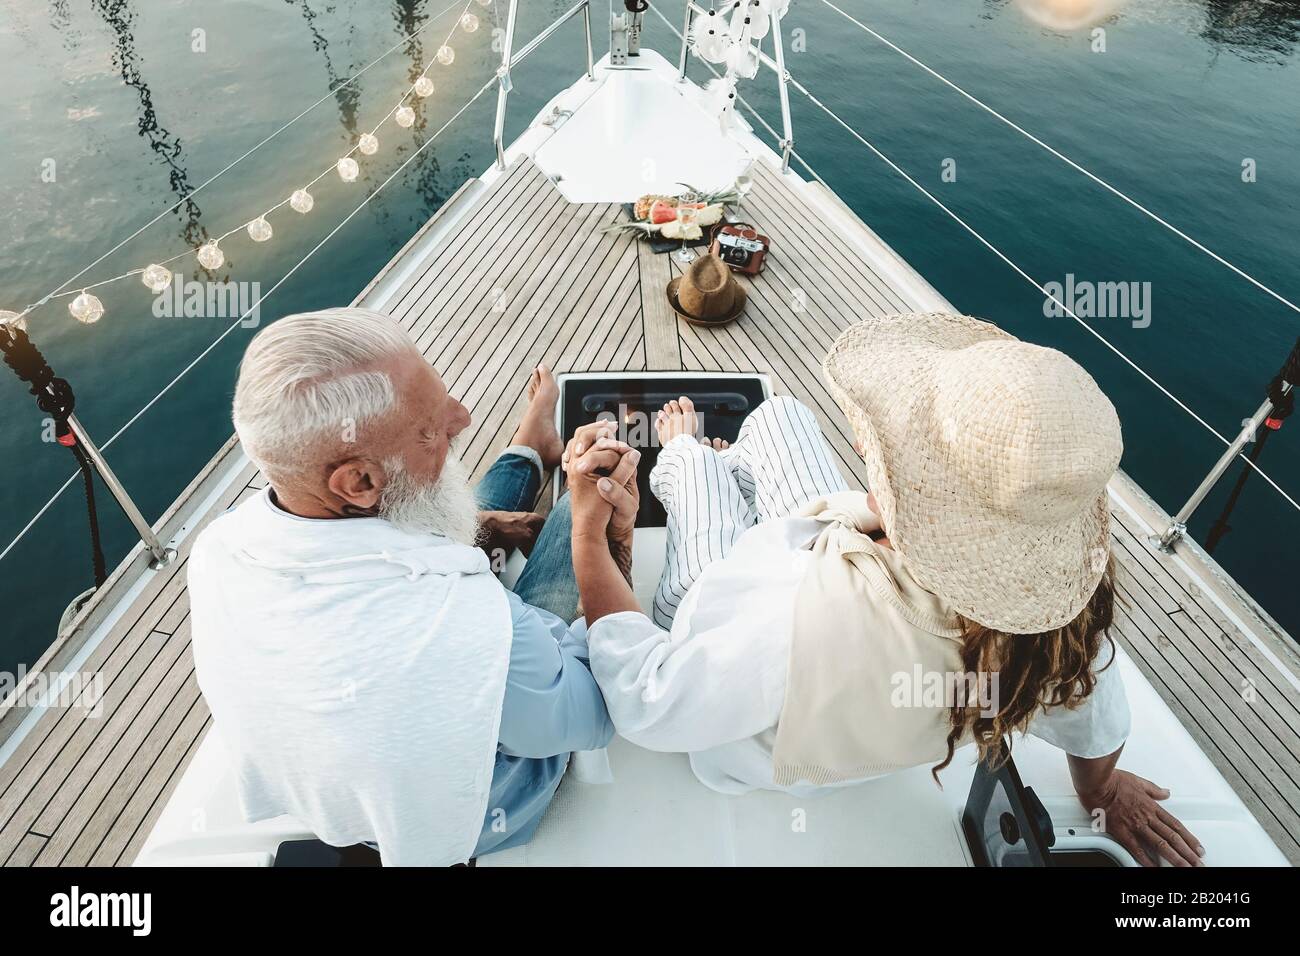 Älteres Paar feiert Hochzeitstag auf dem segelboot - Glückliche, reife Menschen haben Spaß auf Bootsfahrt Urlaub Stockfoto